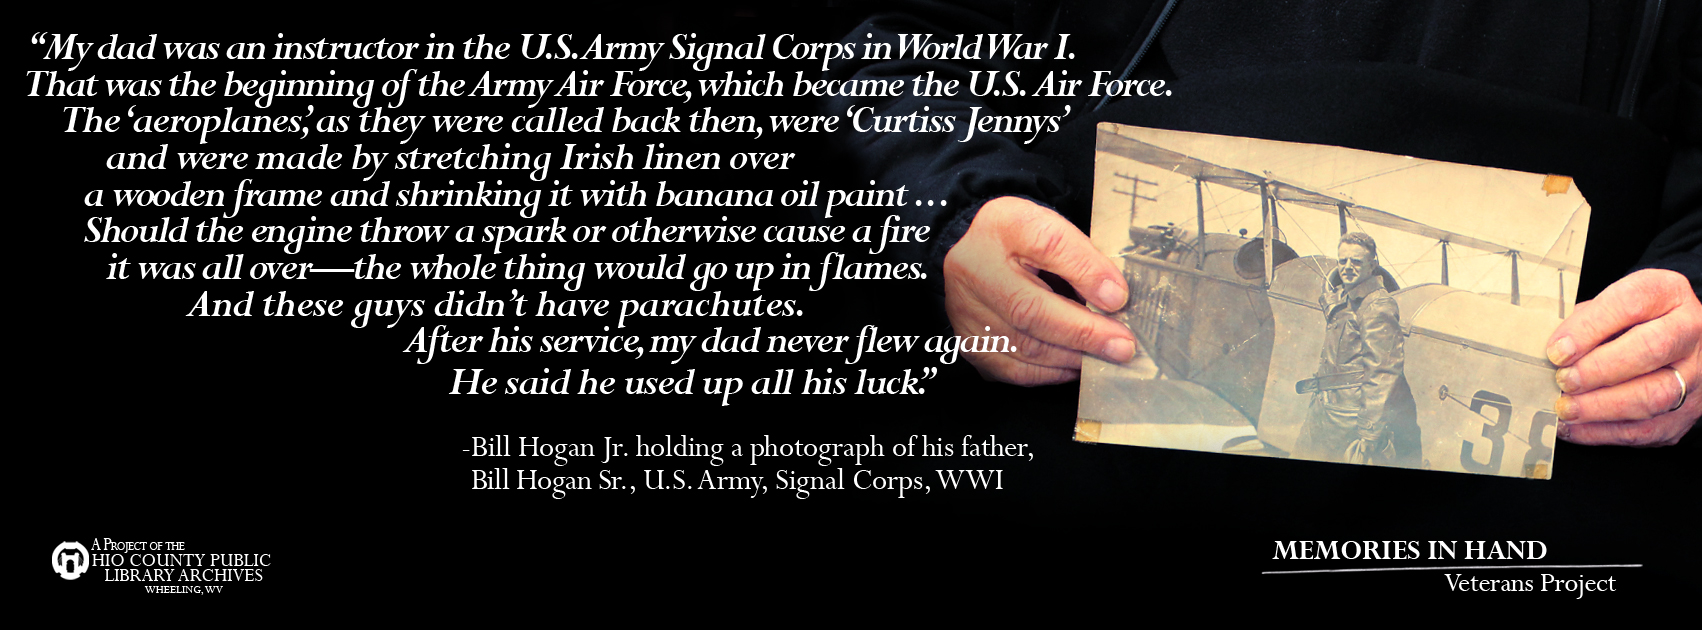 William Hogan Sr., U.S. Army, Signal Corps, WWI